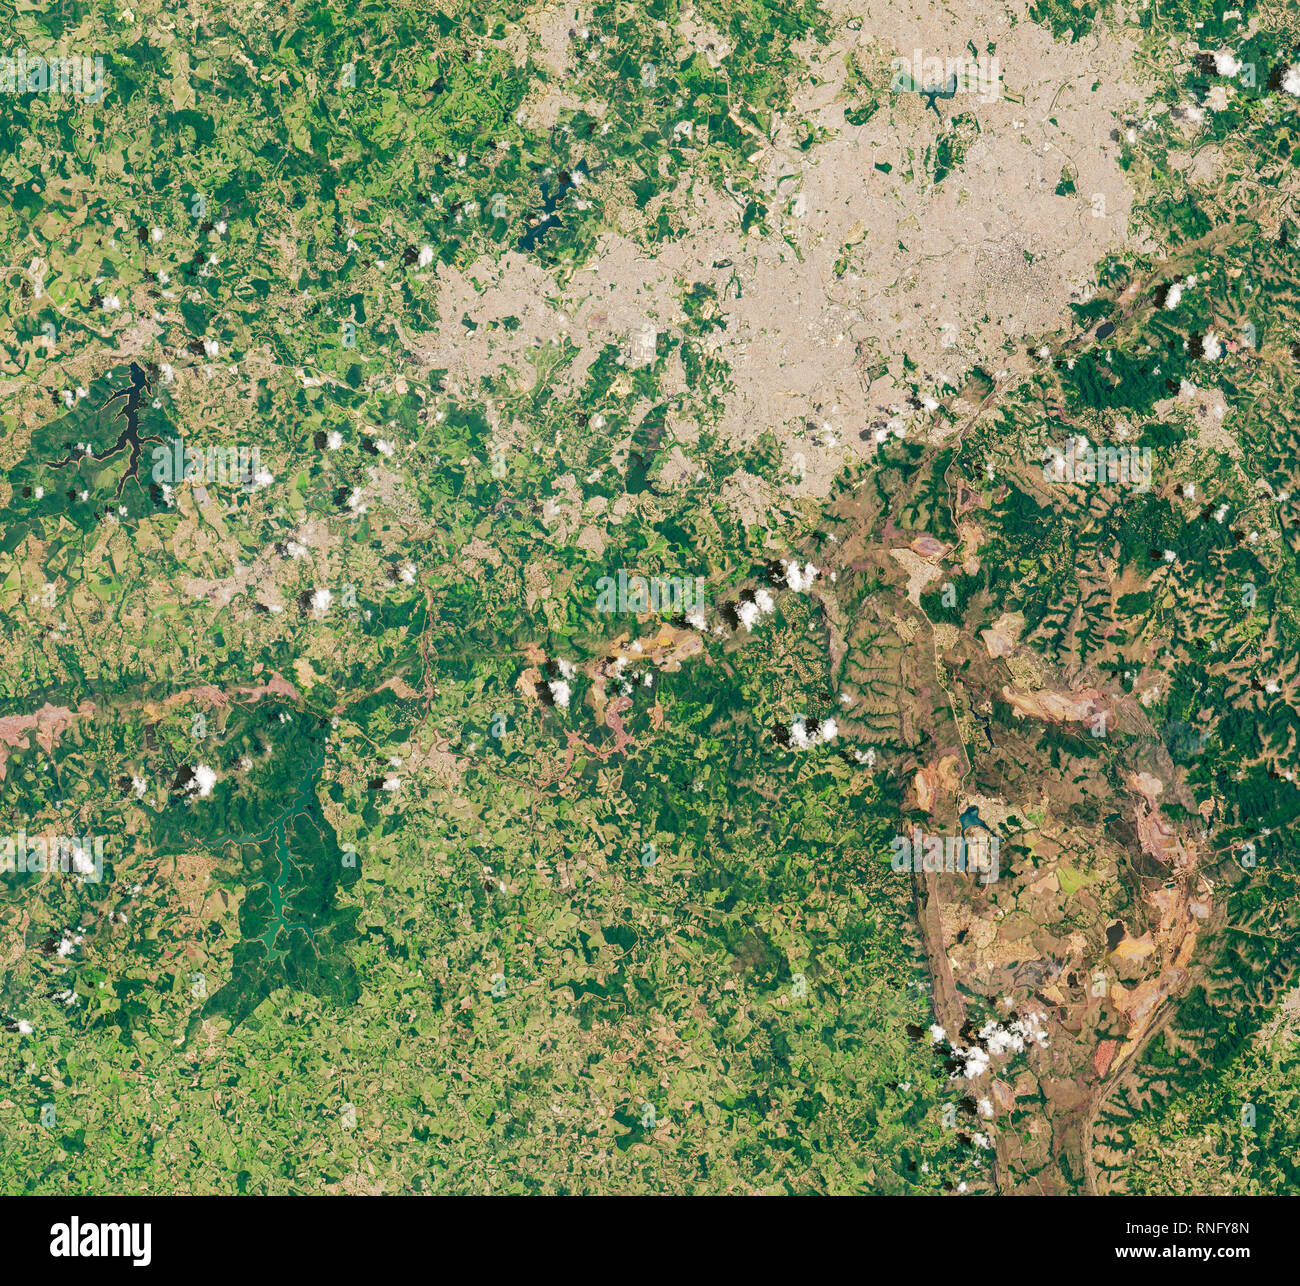 Vue aérienne de l'Córrego do Feijão effondrement de la mine dans le sud-est de l'état de Minas Gerais, Brésil Banque D'Images